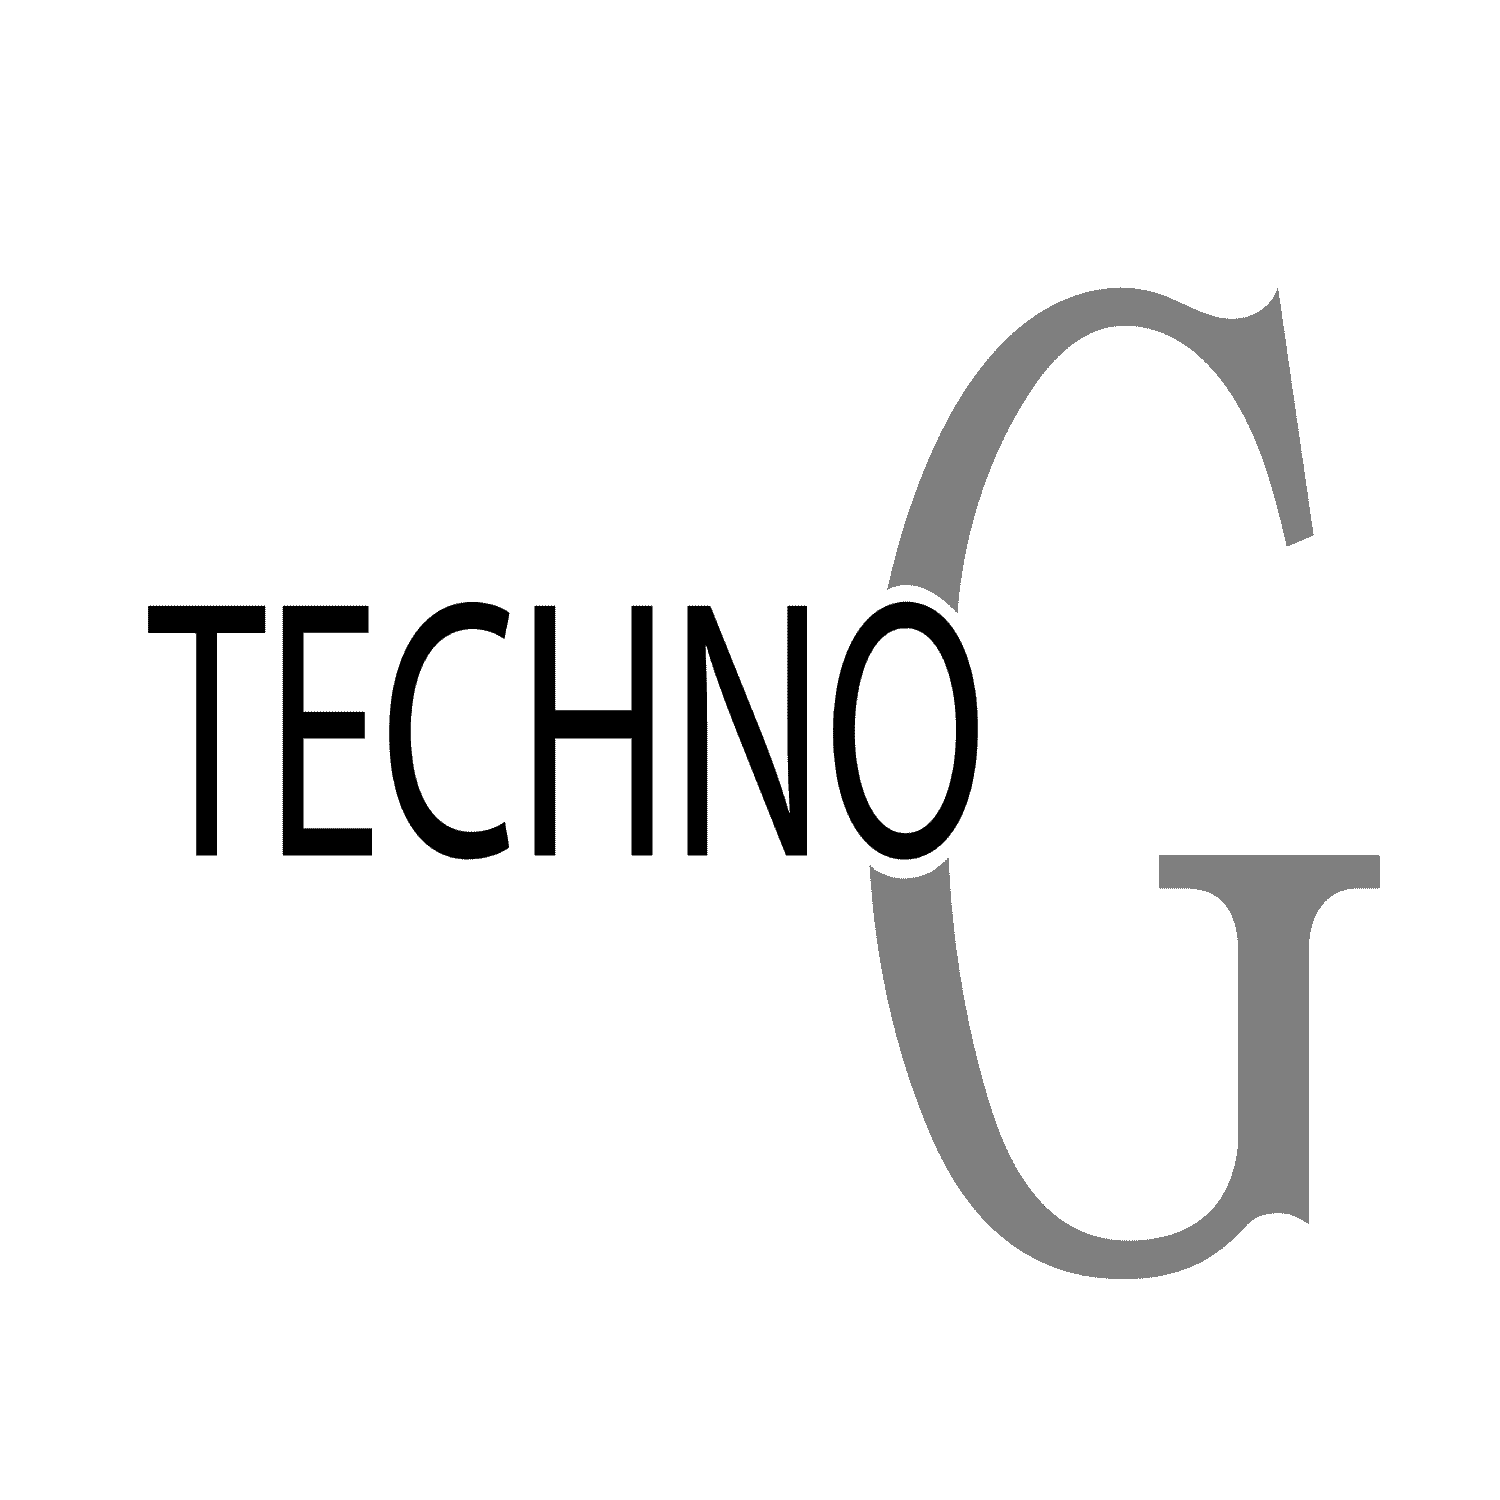 Techno-g ltd